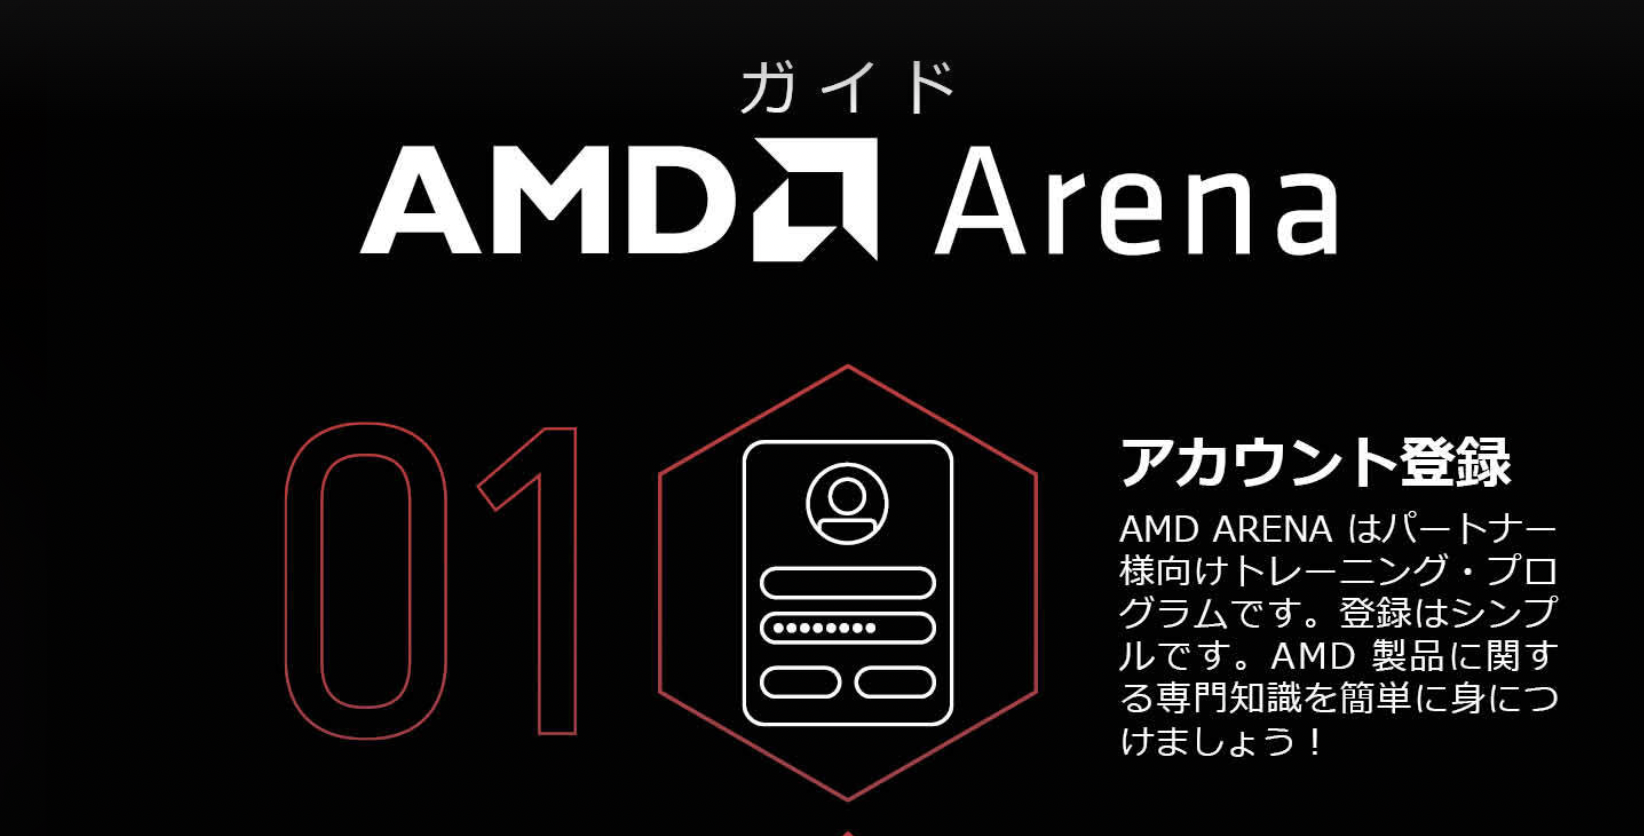 AMD Arena ガイド（デザインA)